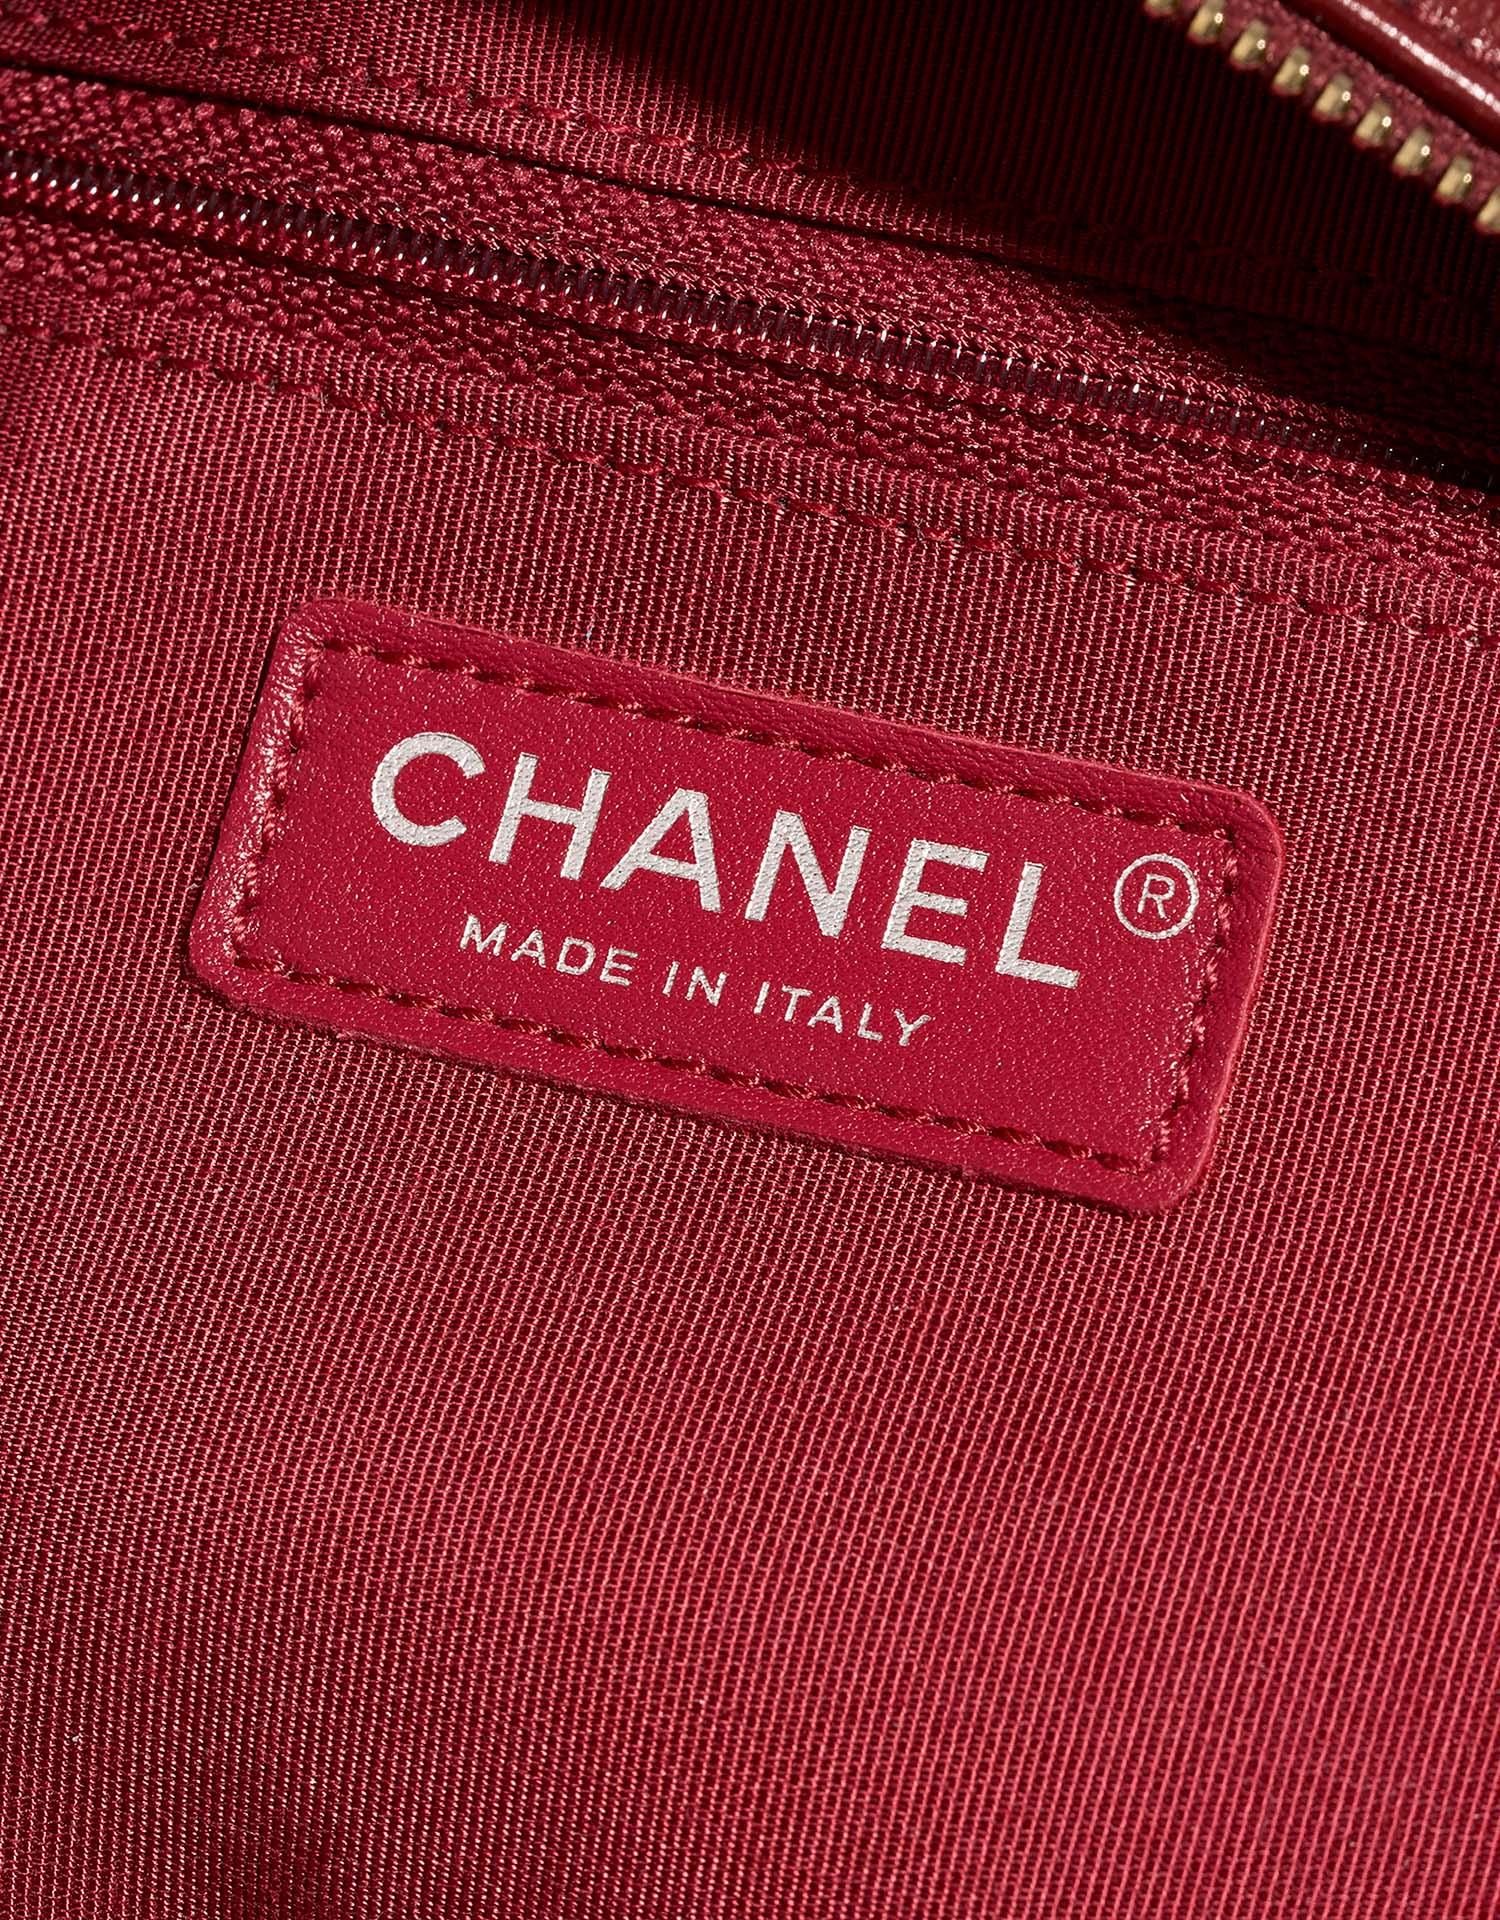 Chanel Gabrielle Medium Blau-Navy-Rot Logo | Verkaufen Sie Ihre Designer-Tasche auf Saclab.com